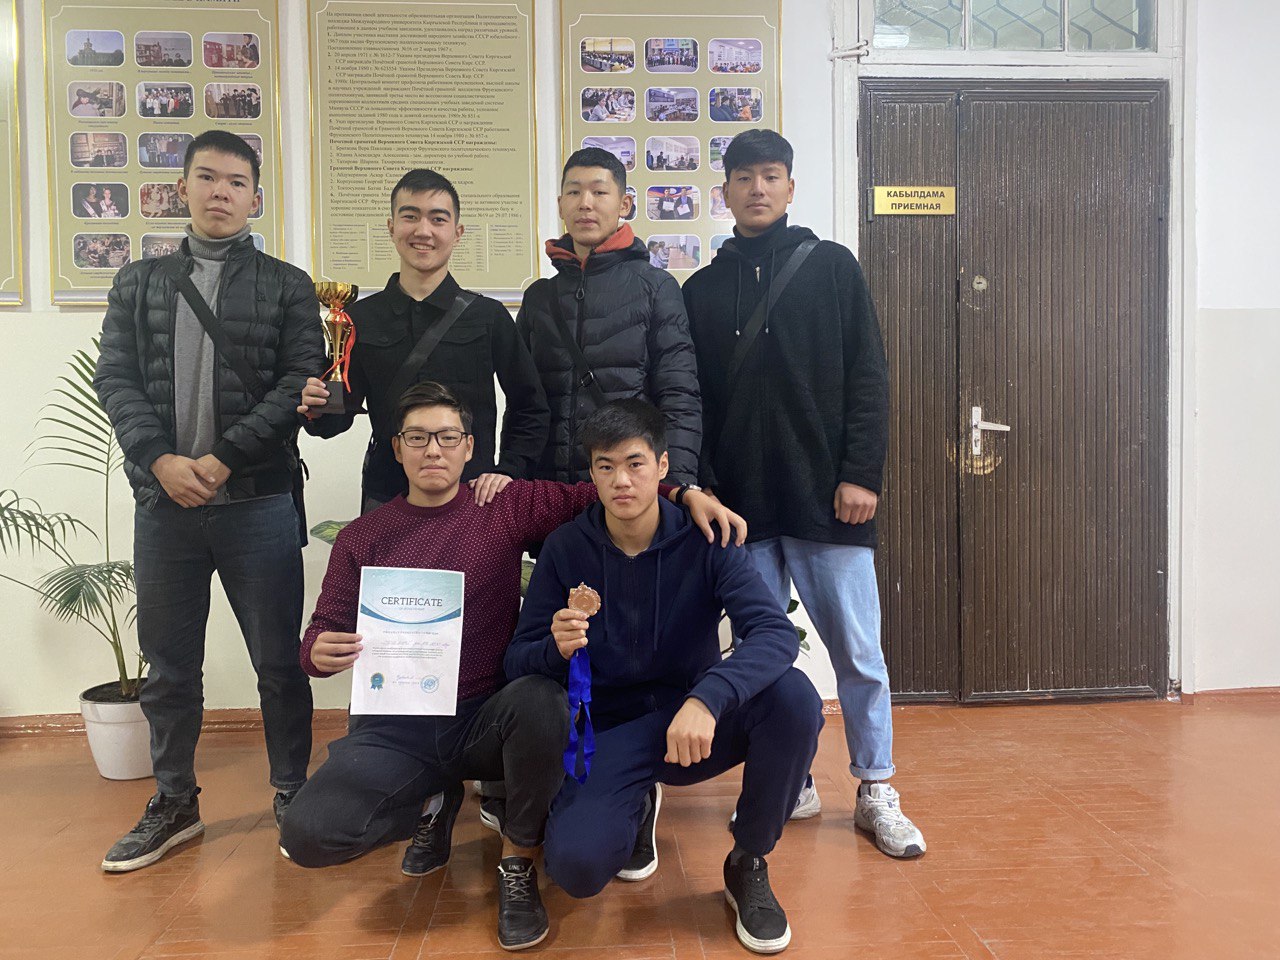 22 октября 2022 года проведено благотворительное соревнование по футболу между колледжами города Бишкек при поддержке УНПК МУК